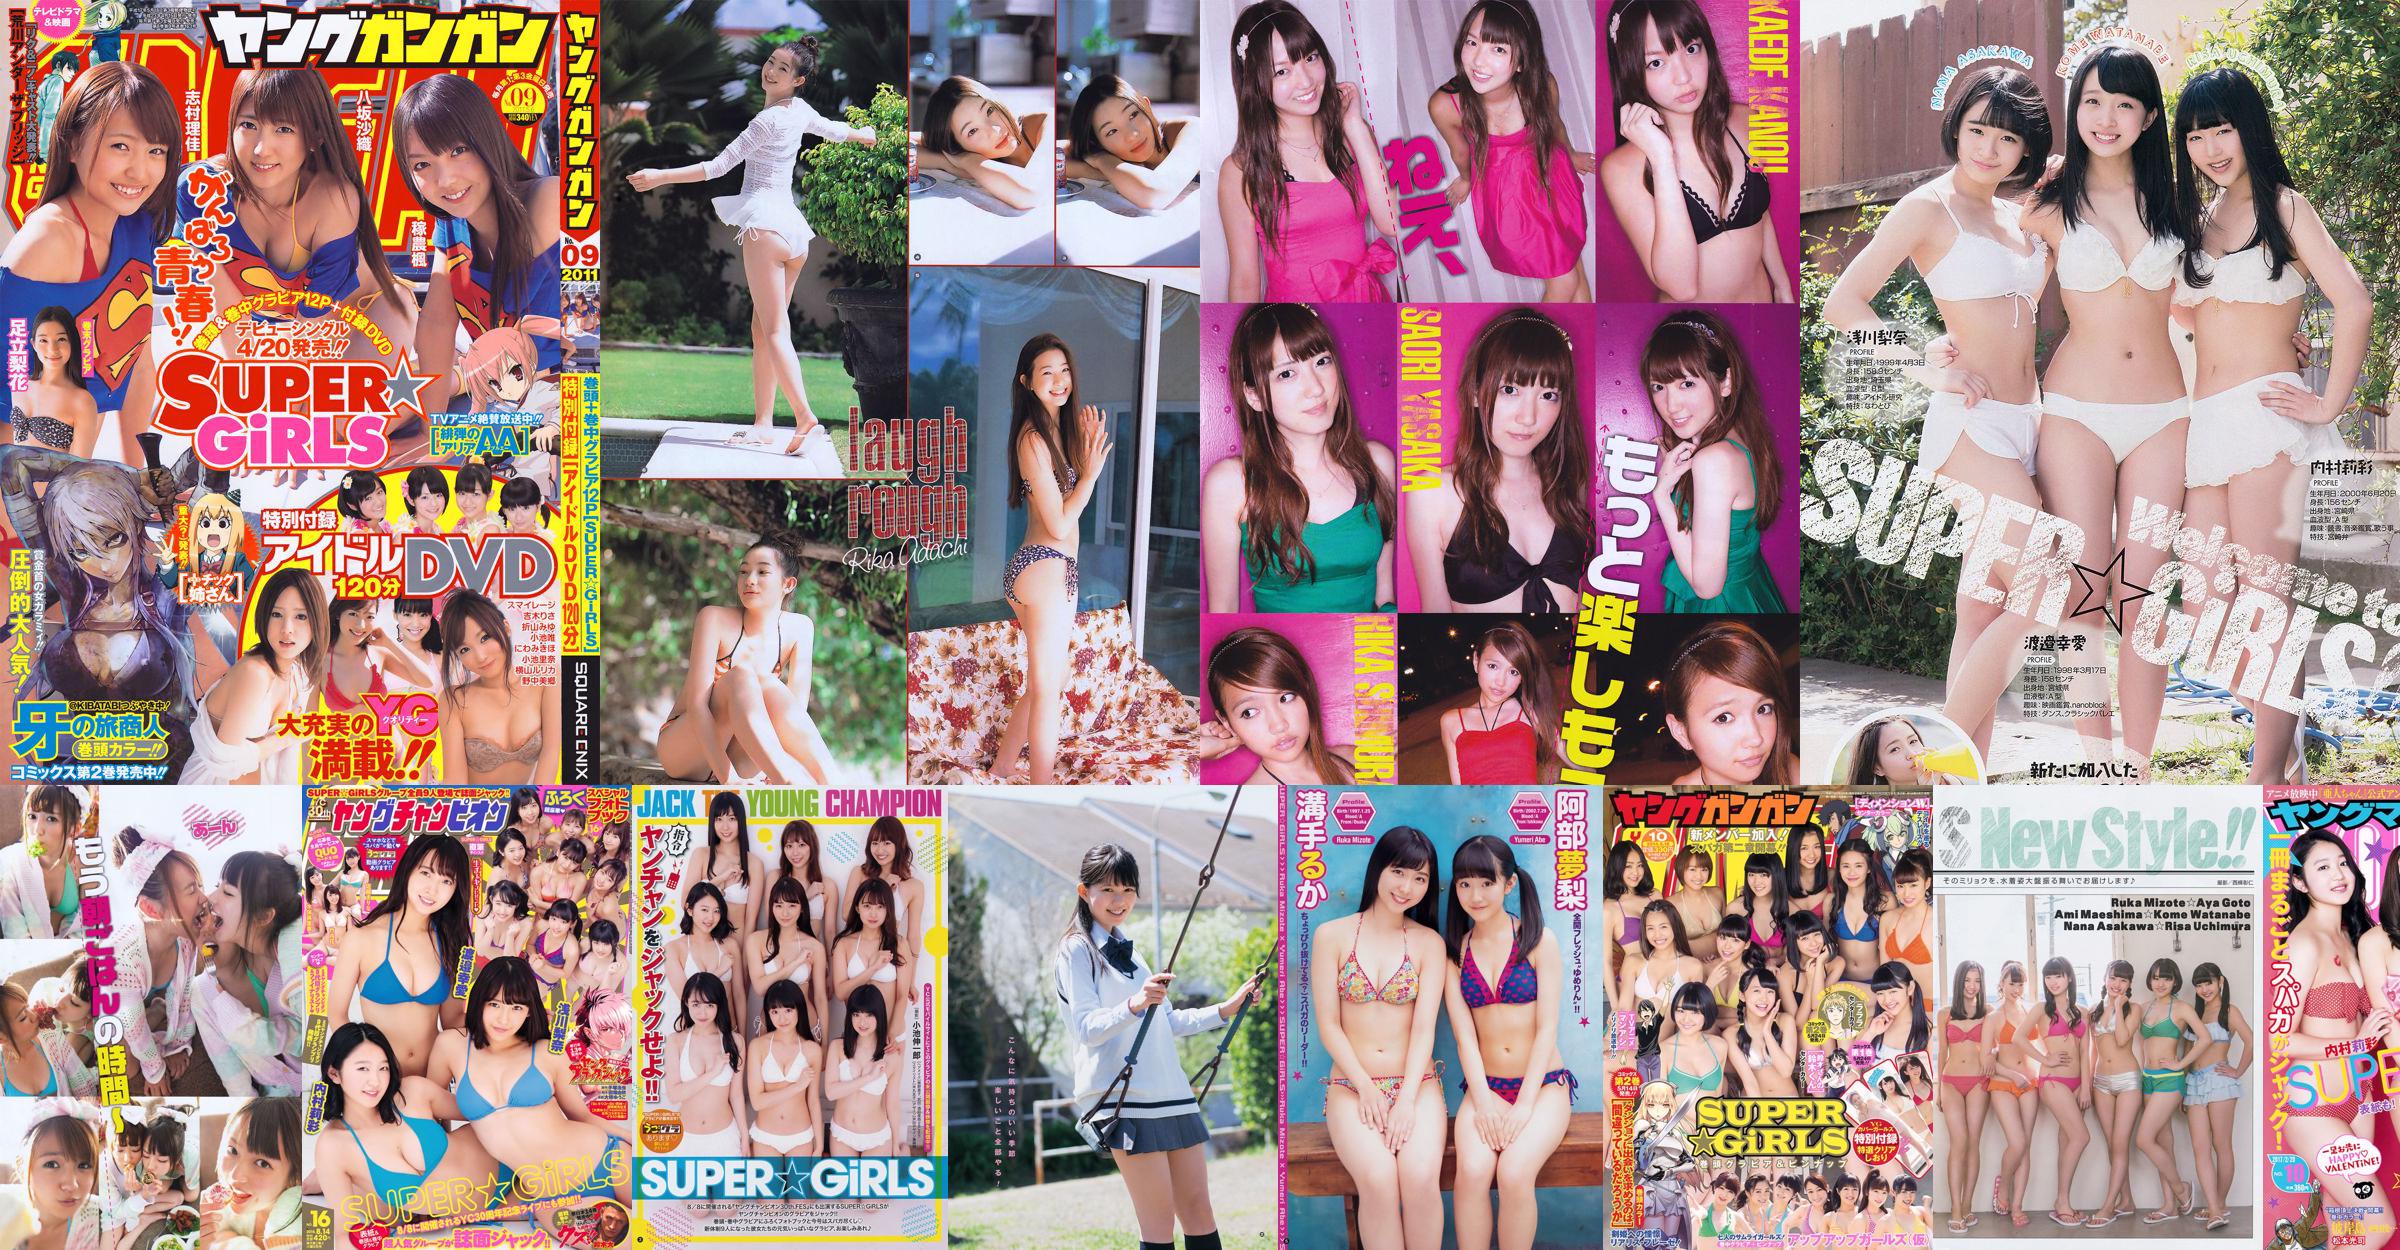 [Young Gangan] SUPER ☆ GiRLS Up Up Girls (Kakko) Ami Yokoyama 2014 No.10 Ảnh No.636da9 Trang 1